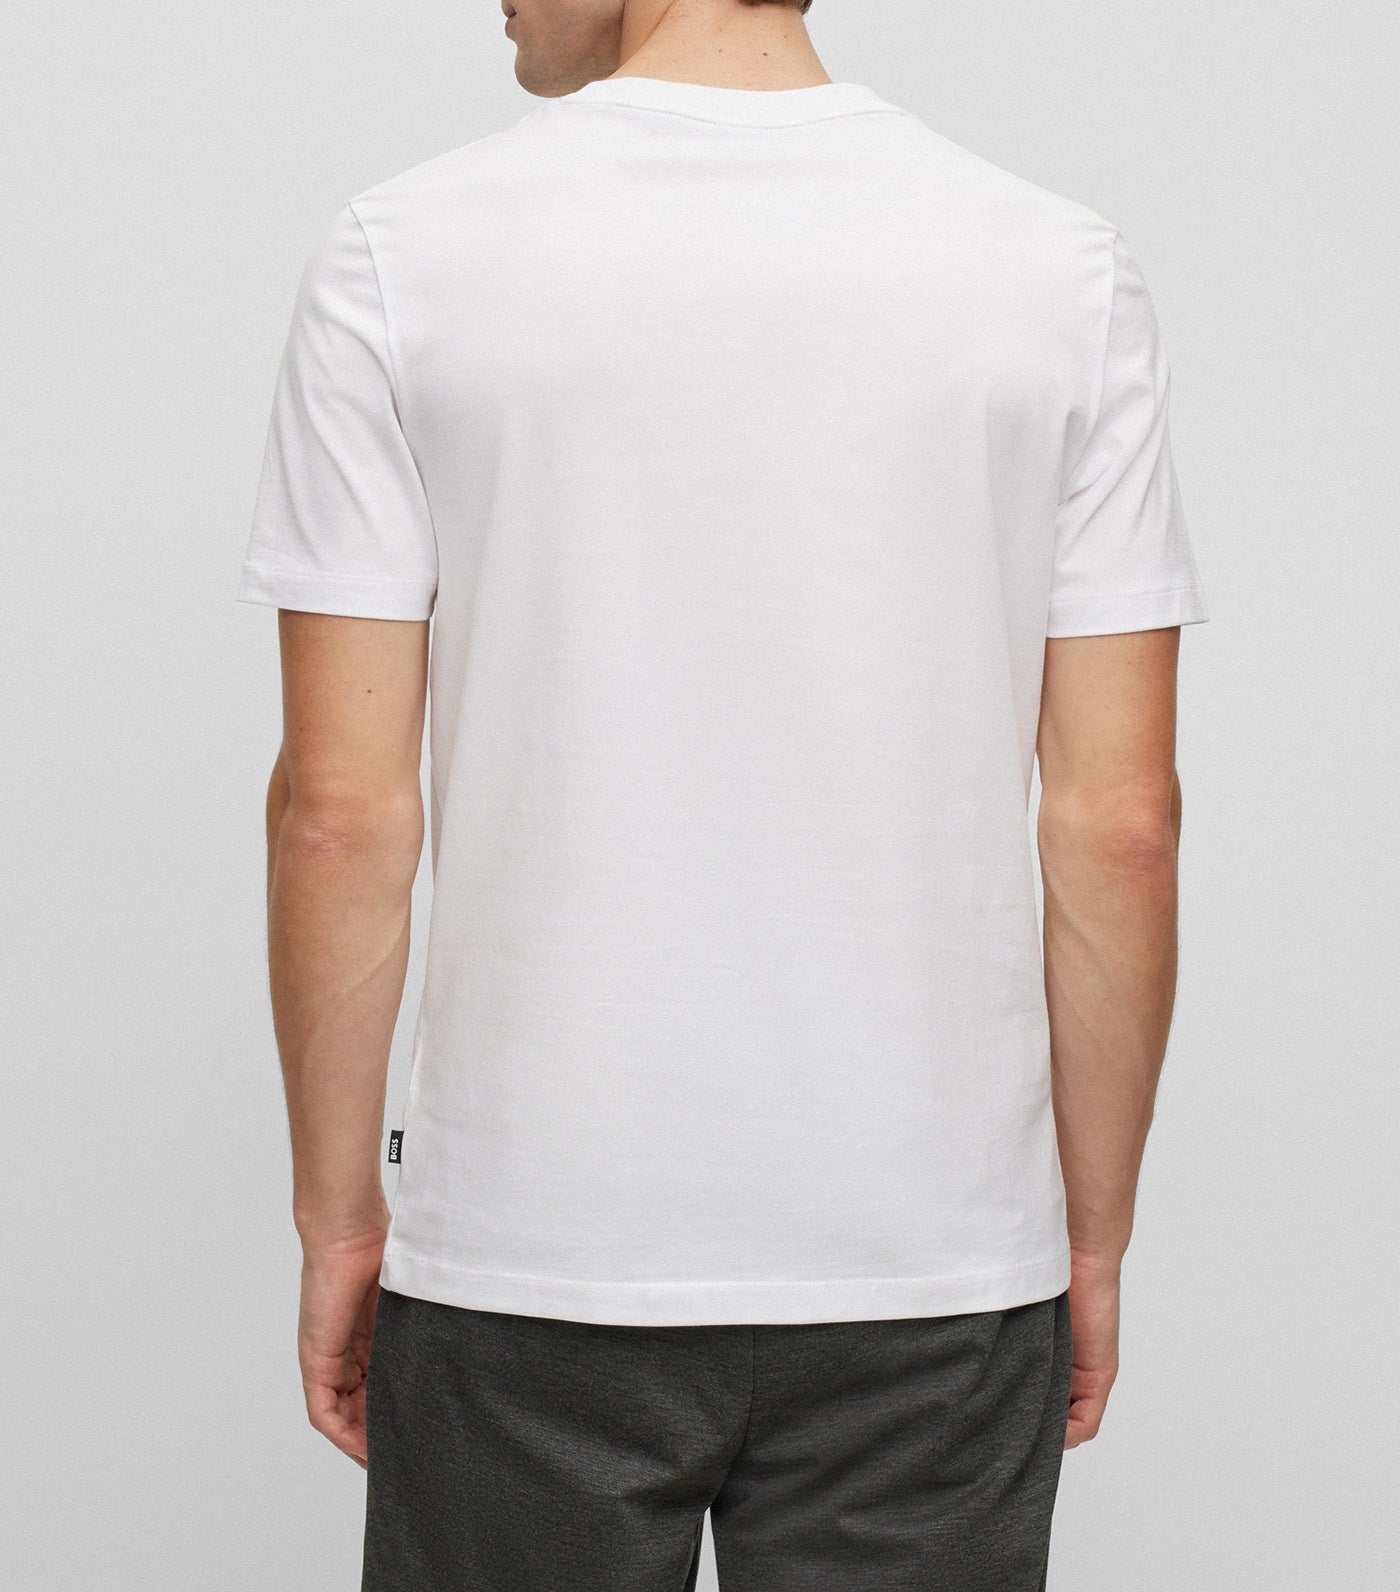 Tiburt 354 T-Shirt White